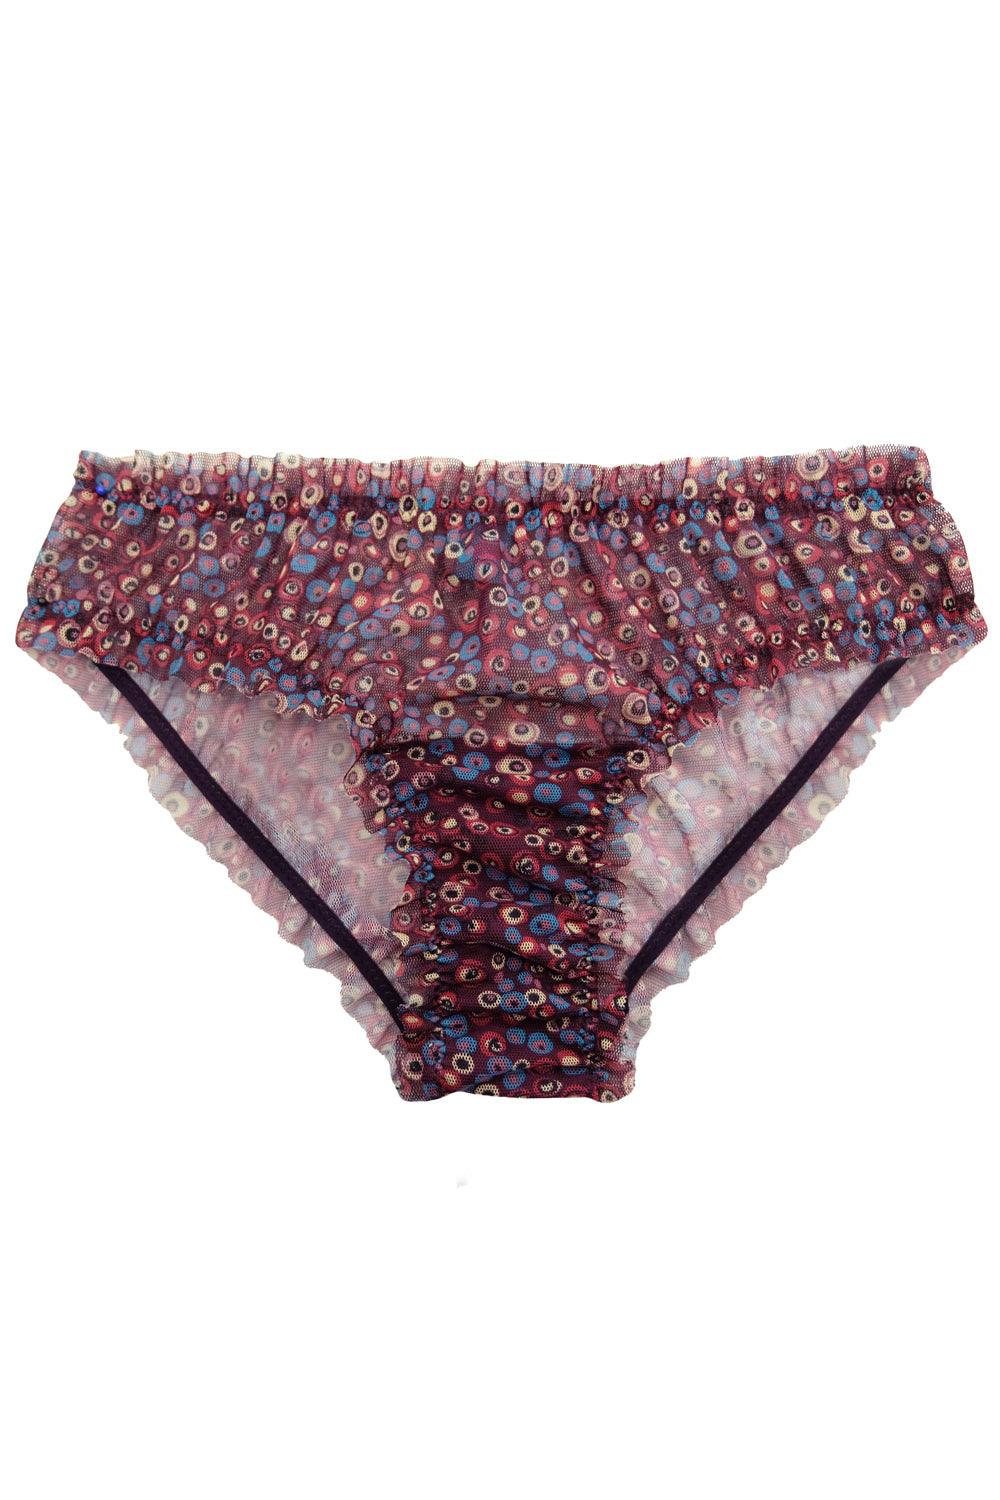 Marbles Purple panties - Slip panties by WOW! Panties. Shop on yesUndress